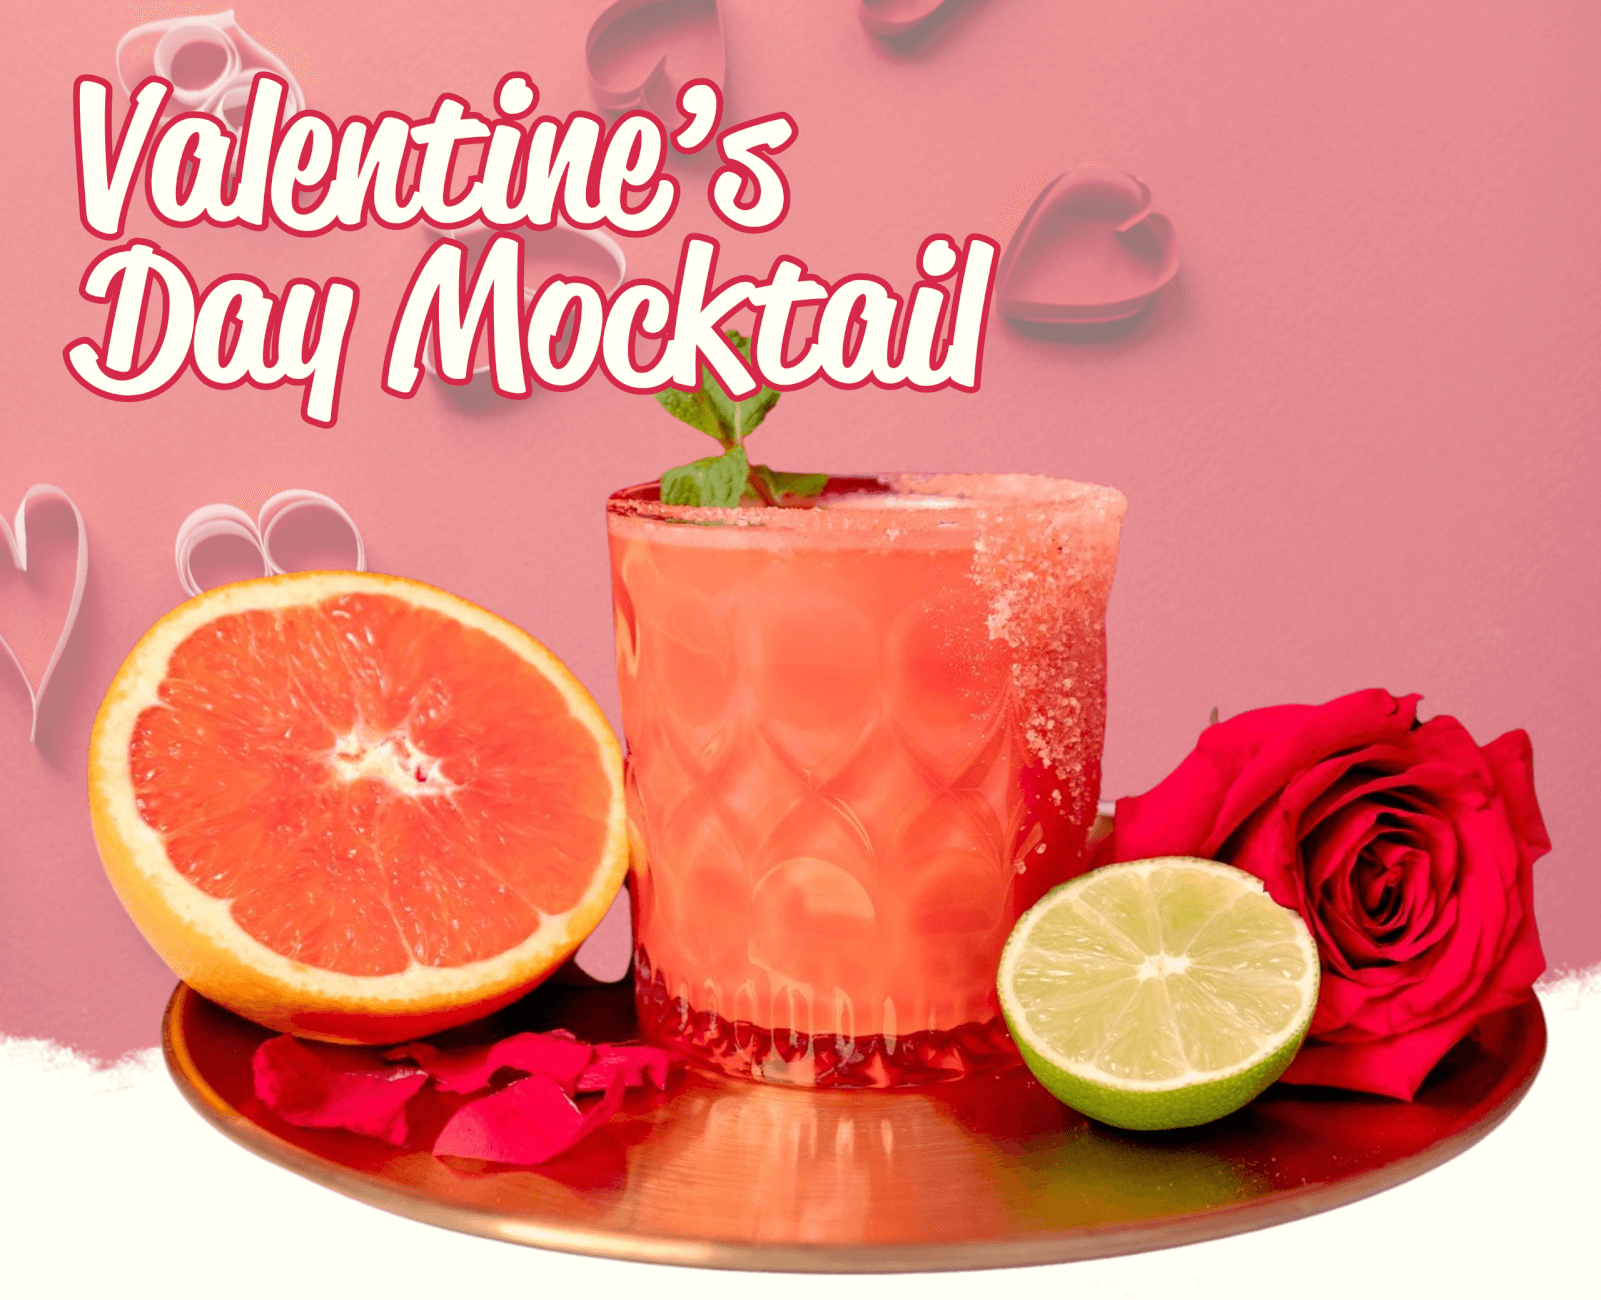 Sedanos.com | Valentines Day Mocktail | Free Deliver at $55